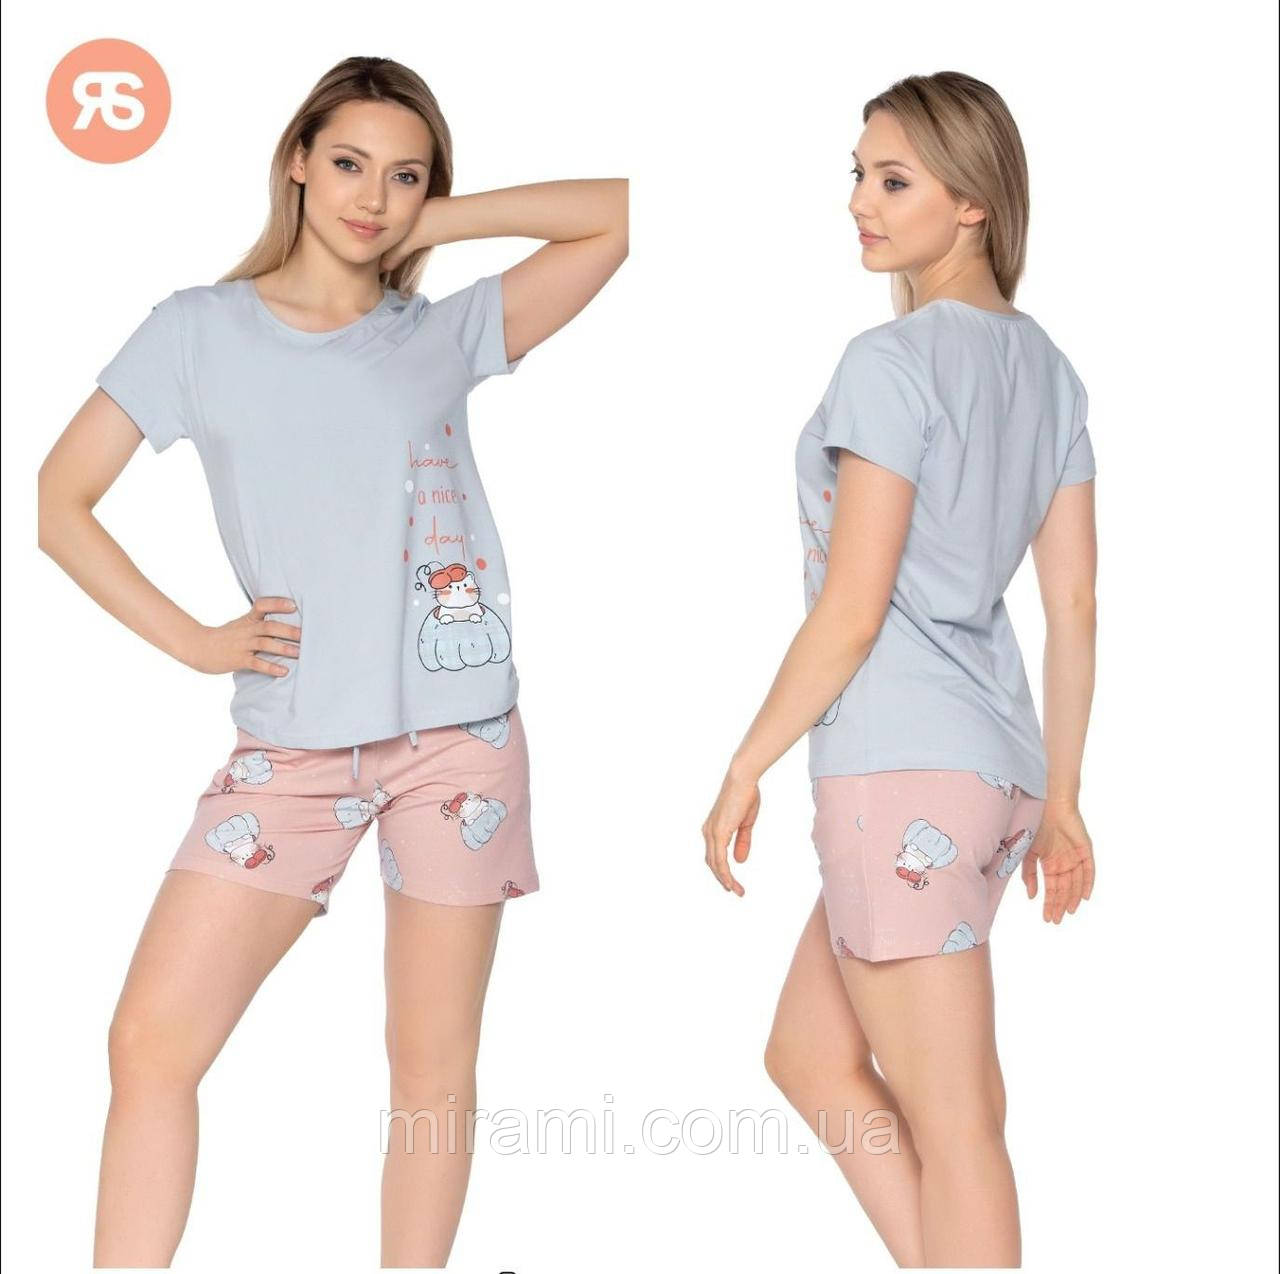 Жіночі піжами футболка з шортами відмінної якості